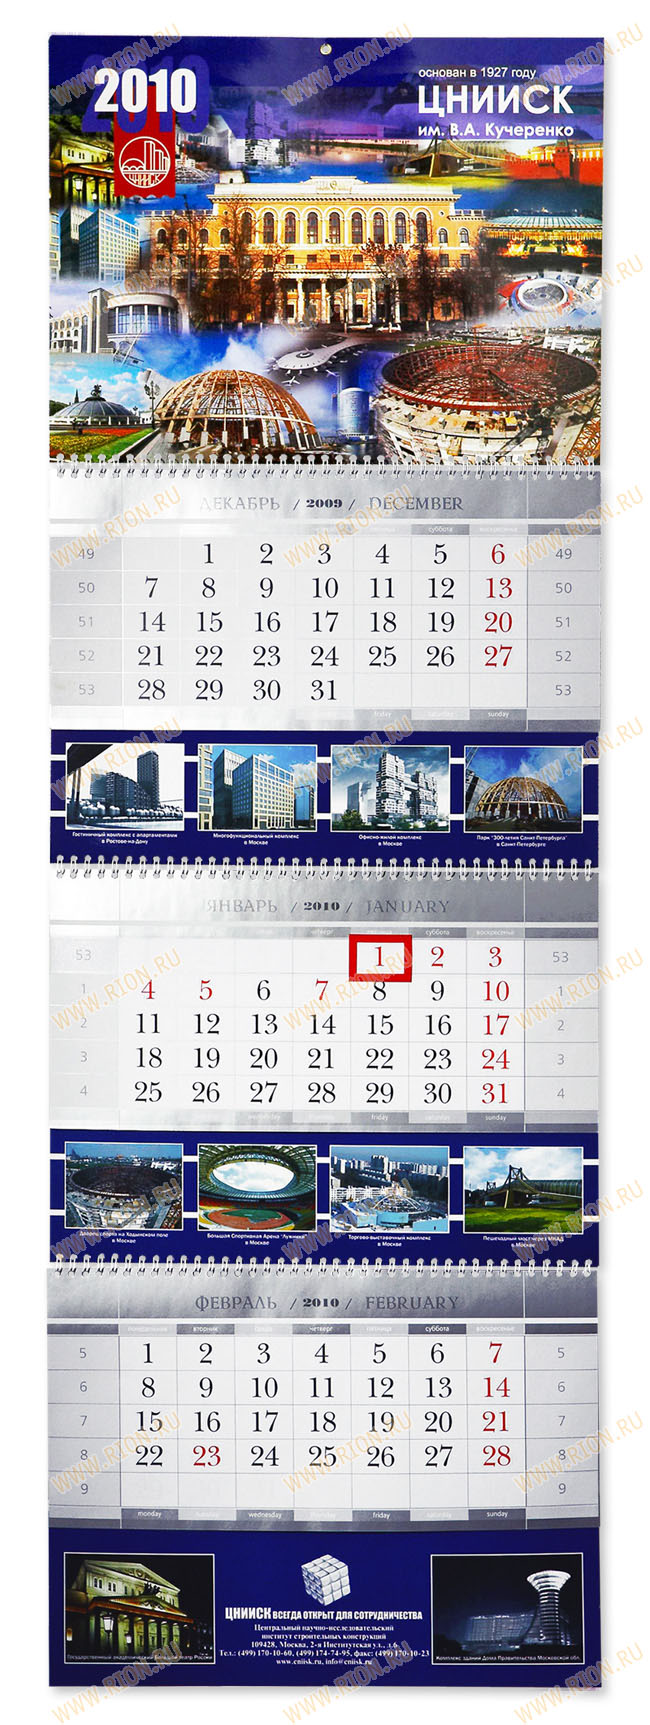 Квартальный календарь на 2010 год (ЦНИИСК)